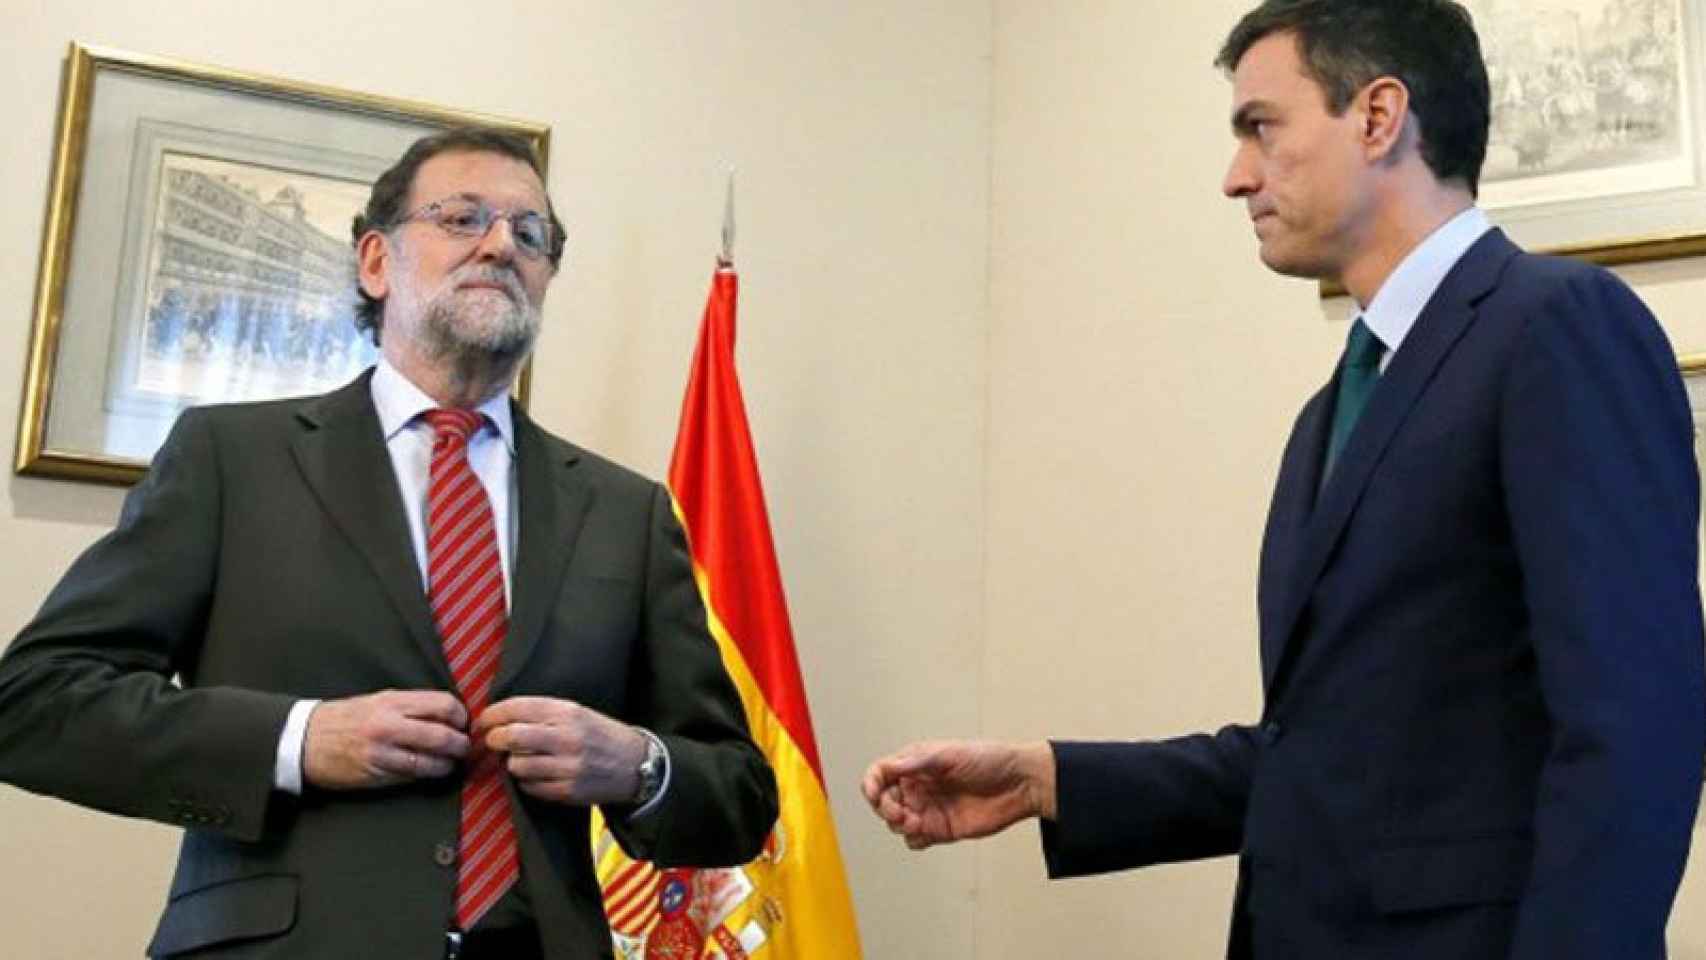 Mariano Rajoy le niega el saludo a Pedro Sánchez --le hace la 'cobra'-- en la famosa reunión en el Congreso